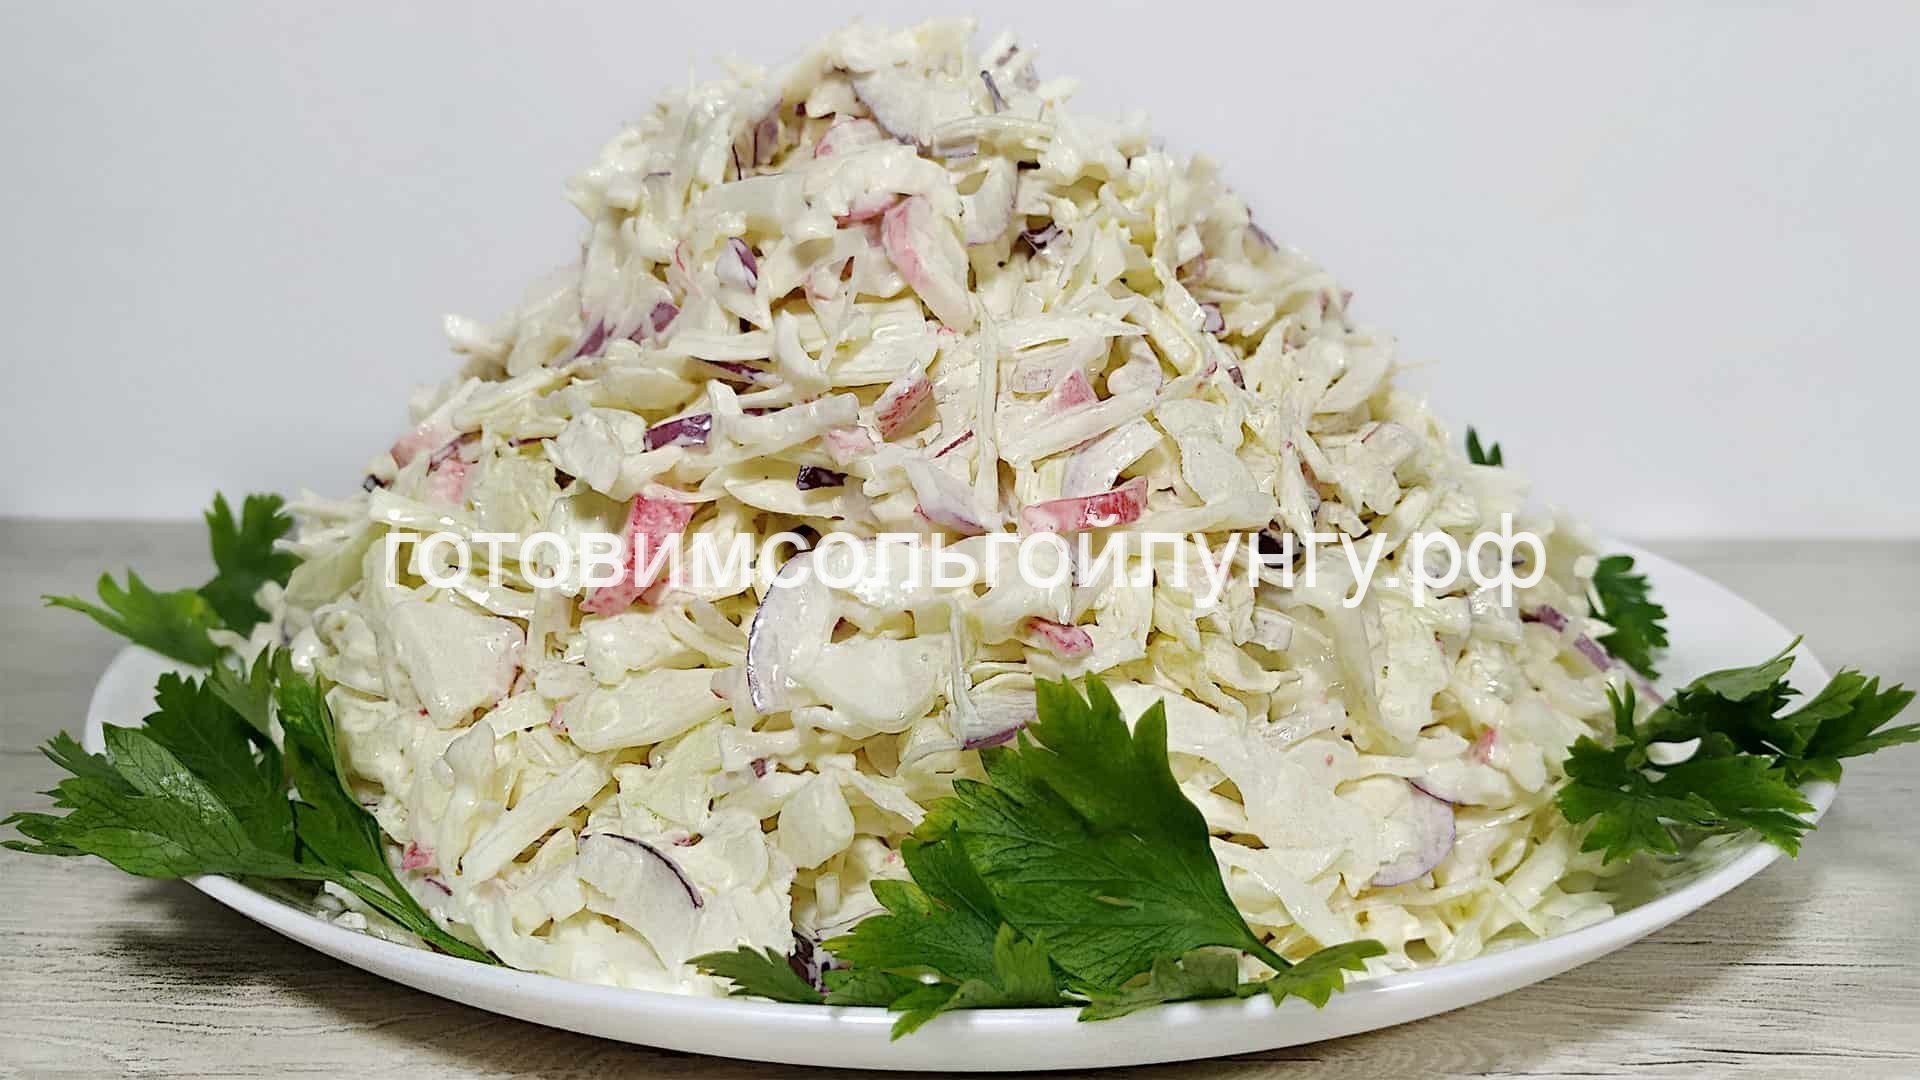 МЕГА простой, вкусный салат за 80 рублей из 3 ингредиентов